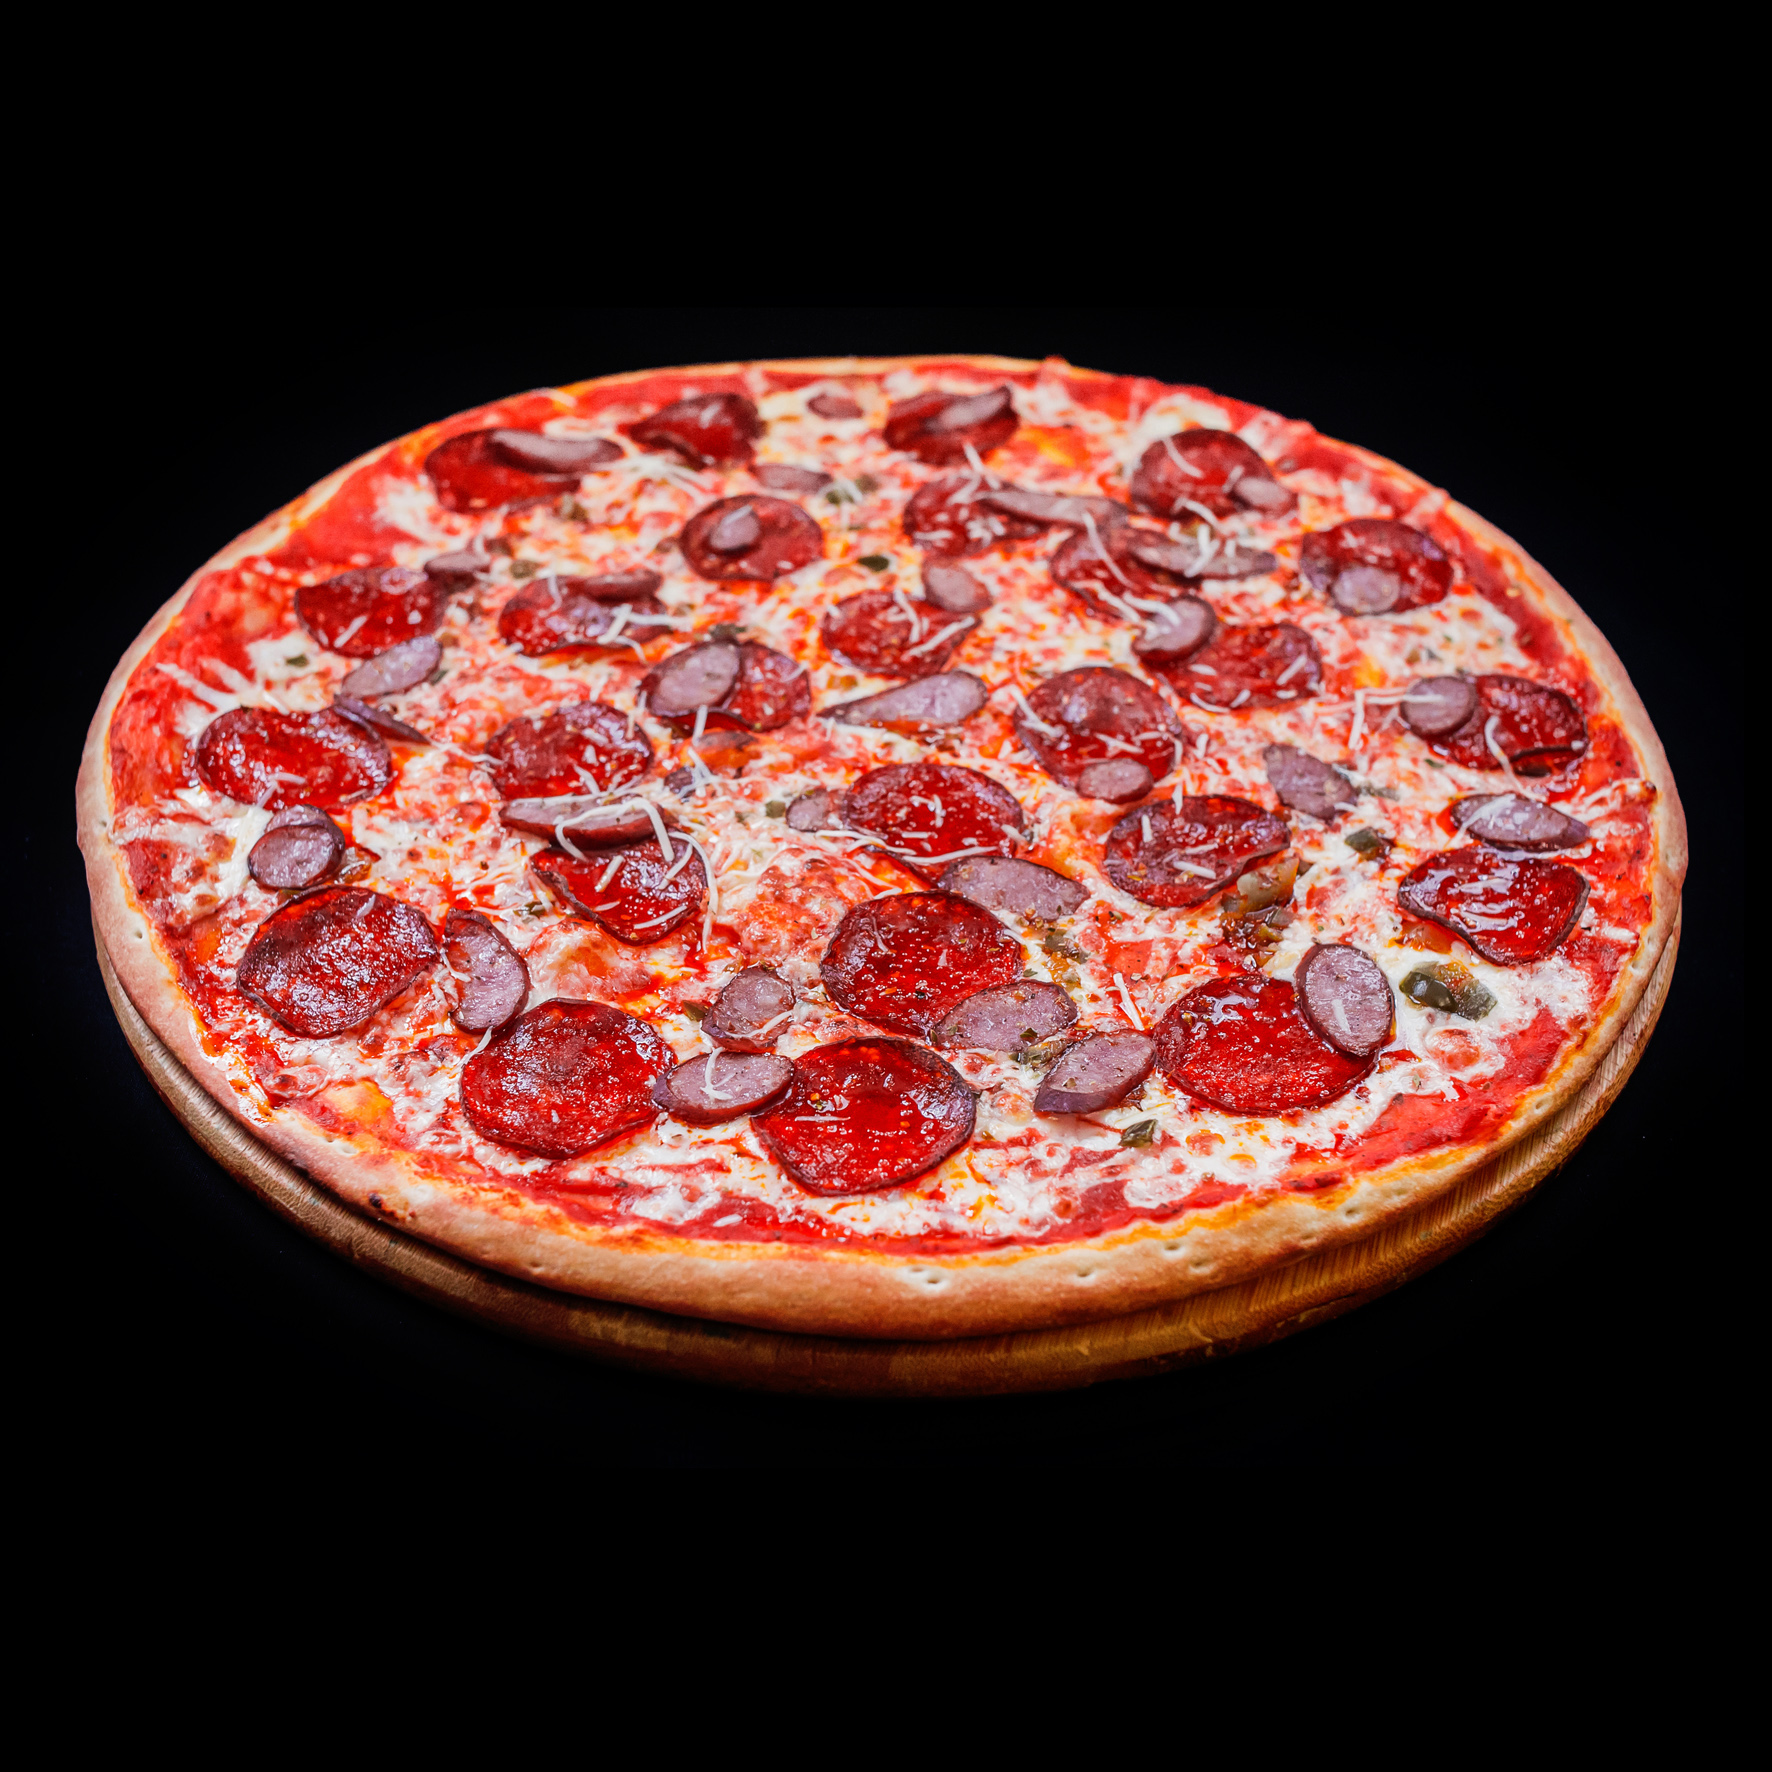 лучшая доставка пицца в москве рейтинг фото 50